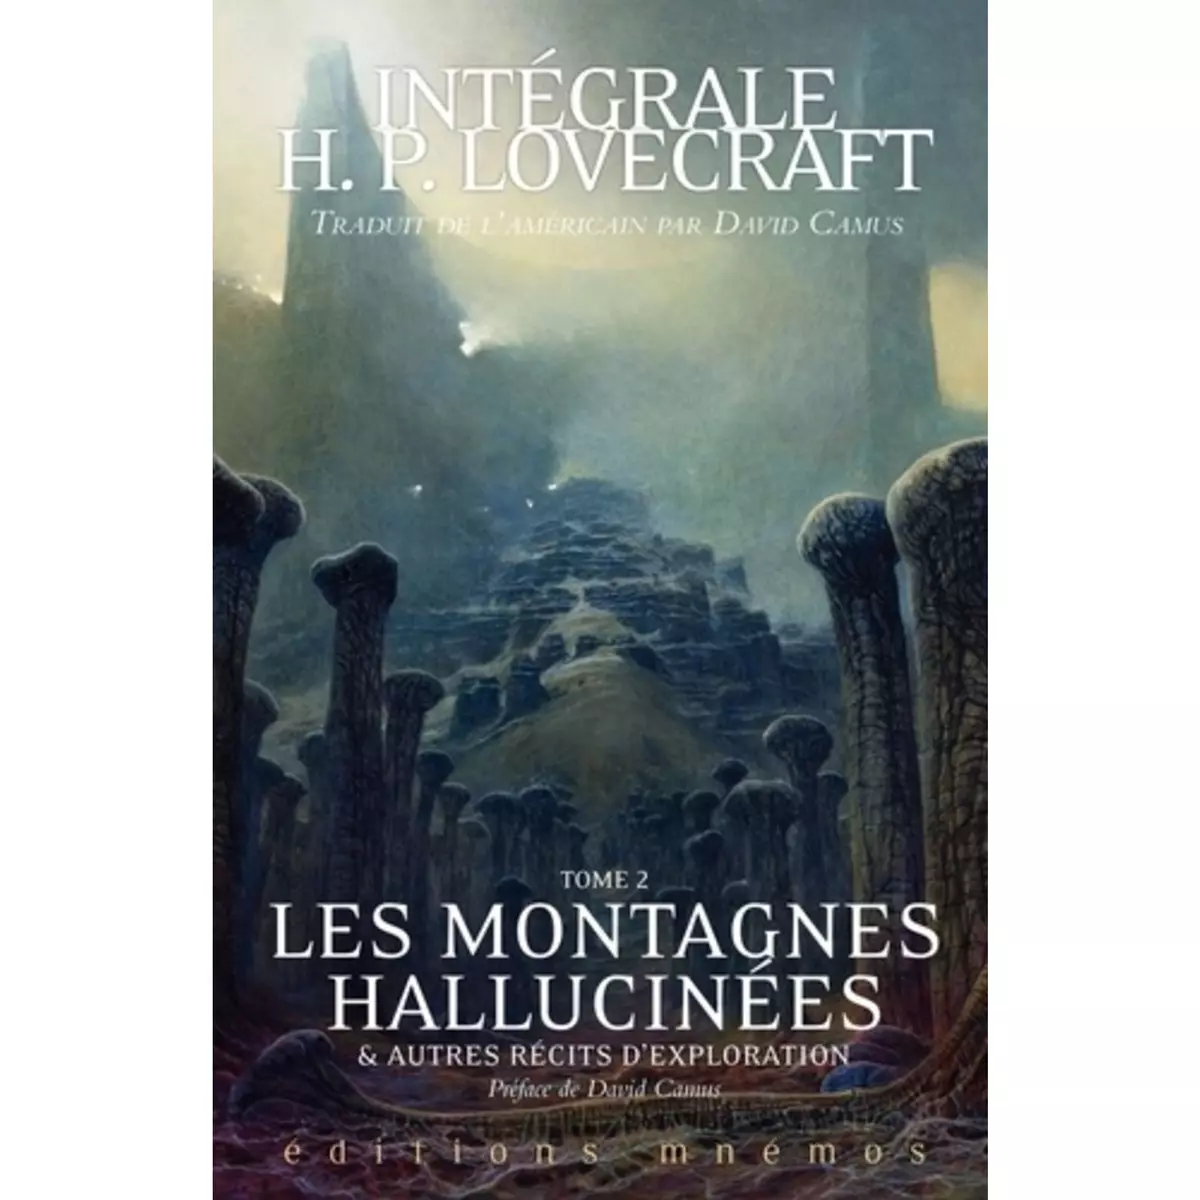  INTEGRALE H. P. LOVECRAFT TOME 2 : LES MONTAGNES HALLUCINEES ET AUTRES RECITS D'EXPLORATION, Lovecraft Howard Phillips